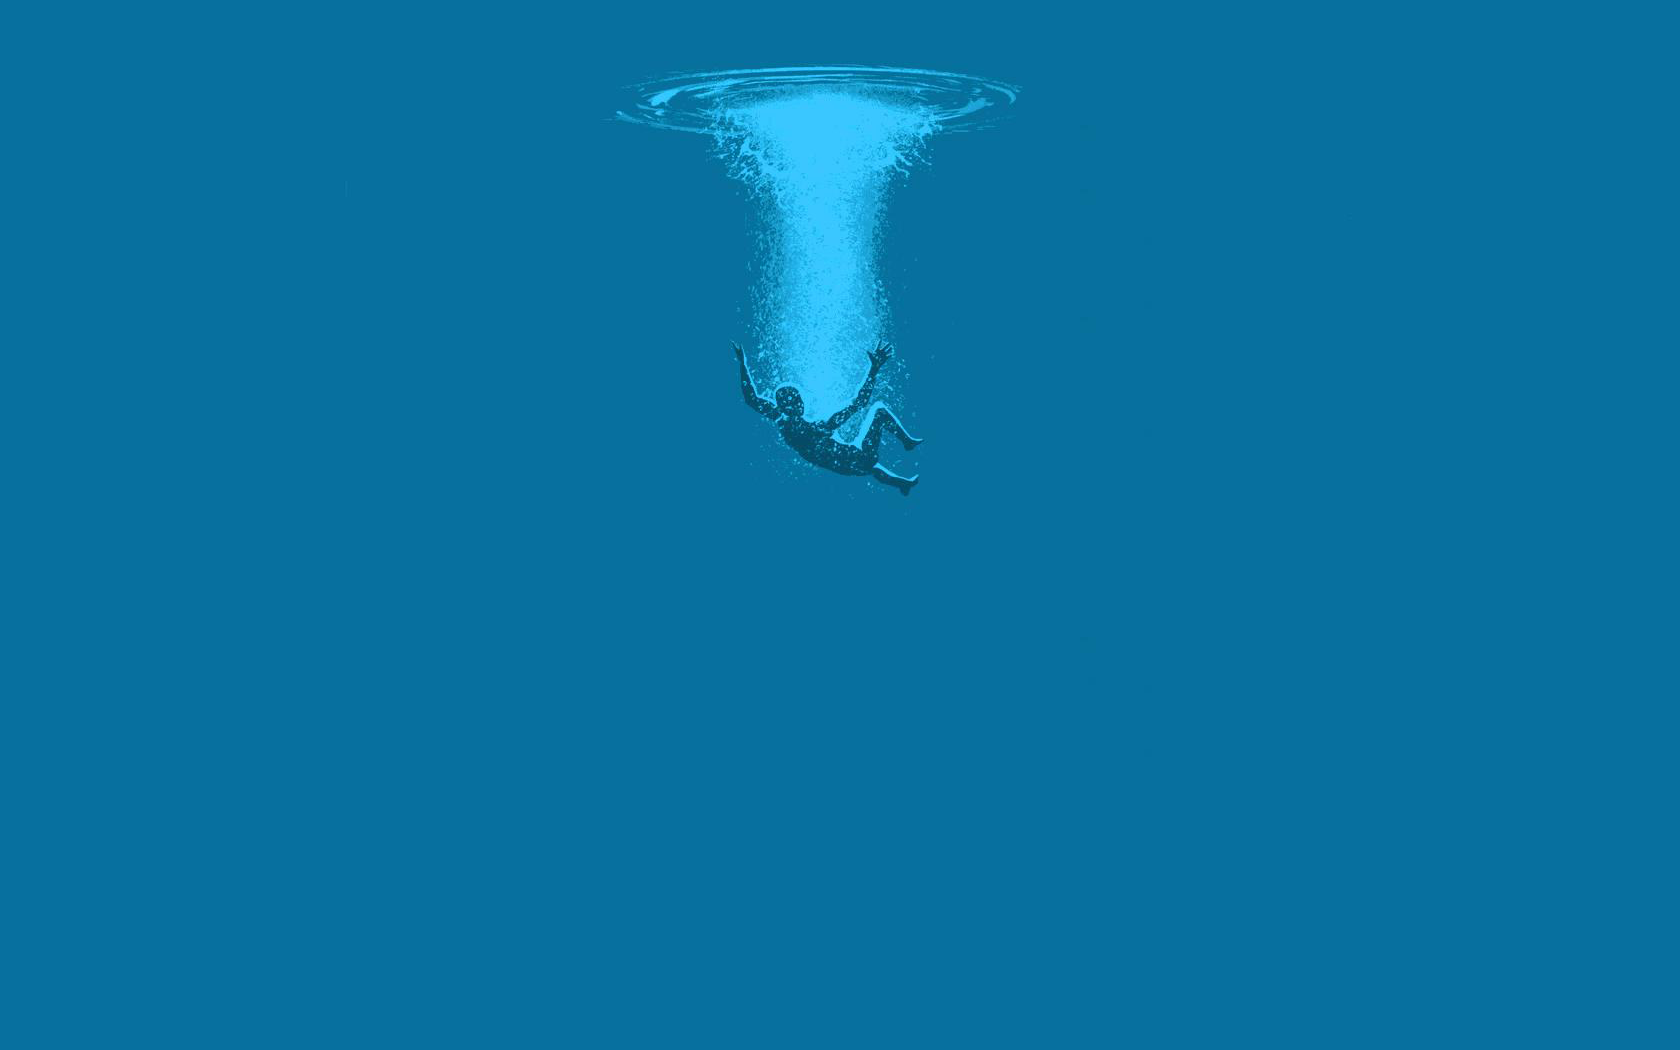 General 1680x1050 water underwater artwork simple background